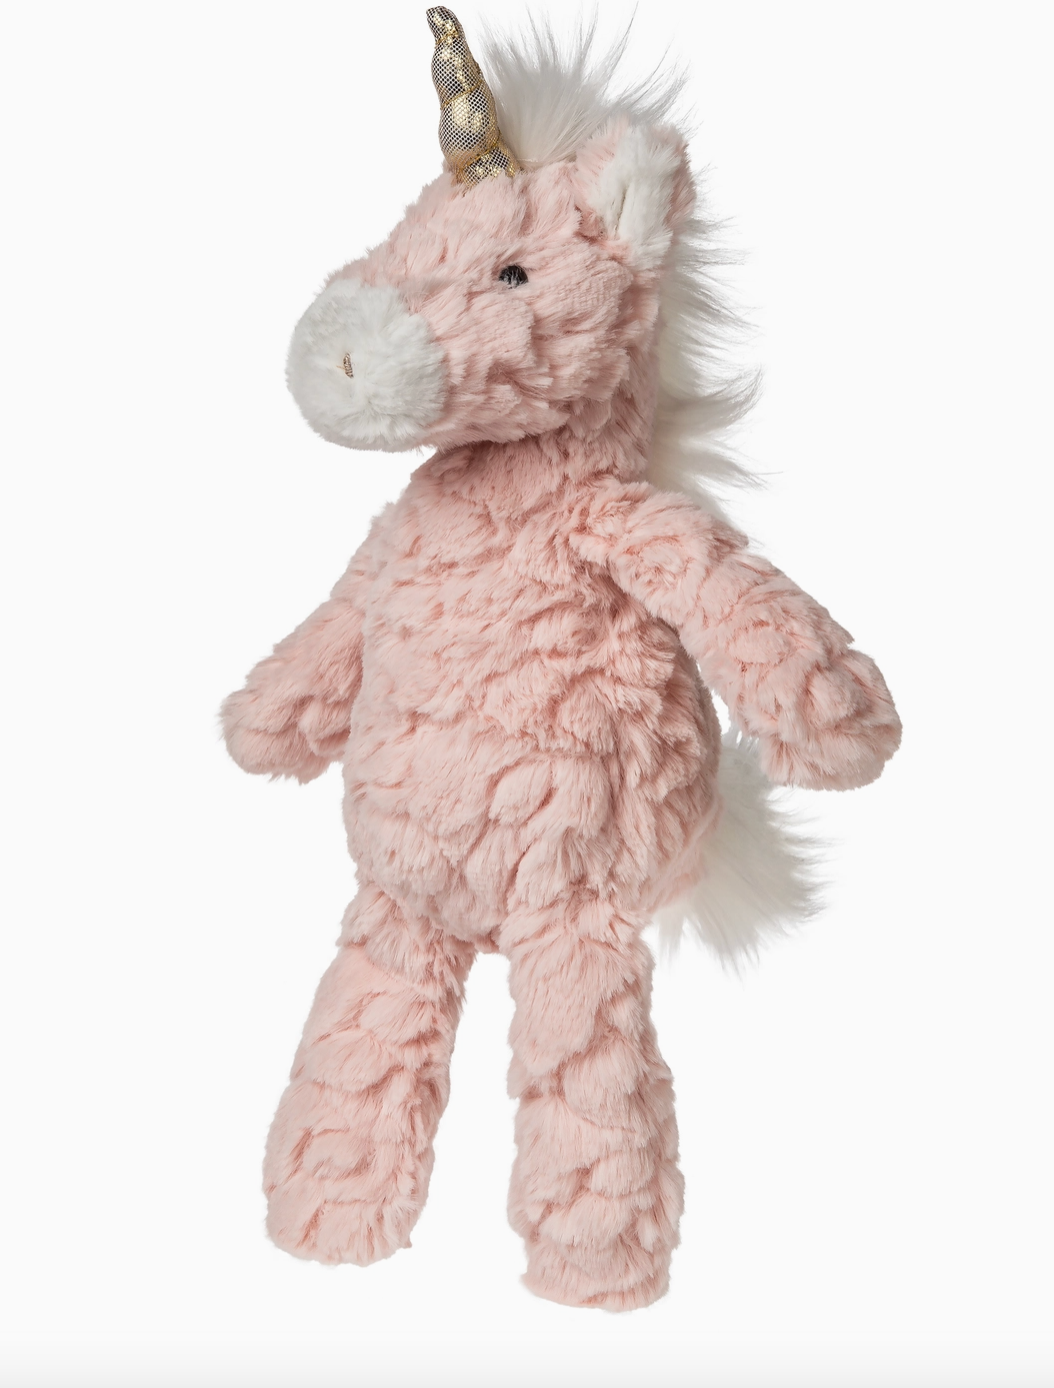 Blush Unicorn Plush Stuffed Toy